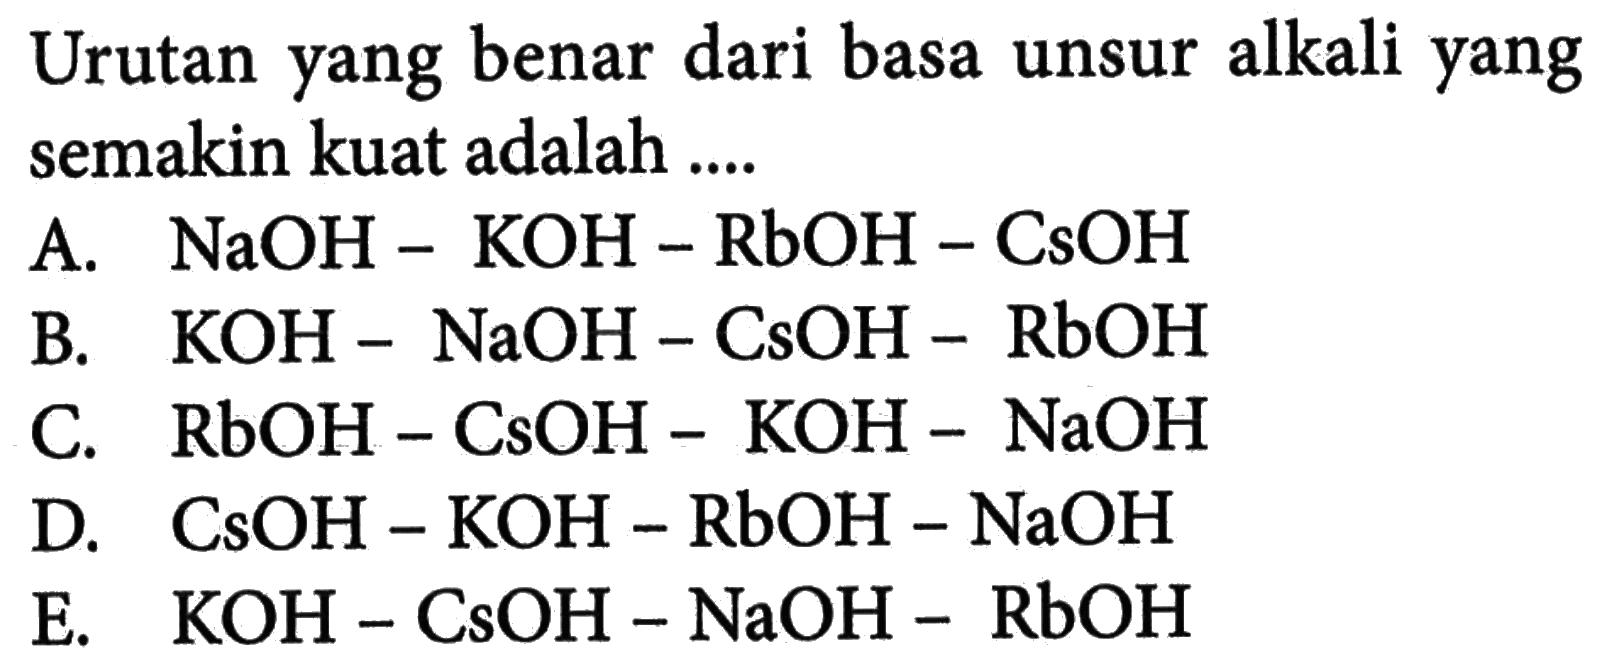 Urutan yang benar dari basa unsur alkali yang semakin kuat adalah .... A. NaOH-KOH-RbOH-CsOH B. KOH-NaOH-CsOH-RbOH C. RbOH-CsOH-KOH-NaOH D. CsOH-KOH-RbOH-NaOH E. KOH-CsOH-NaOH-RbOH